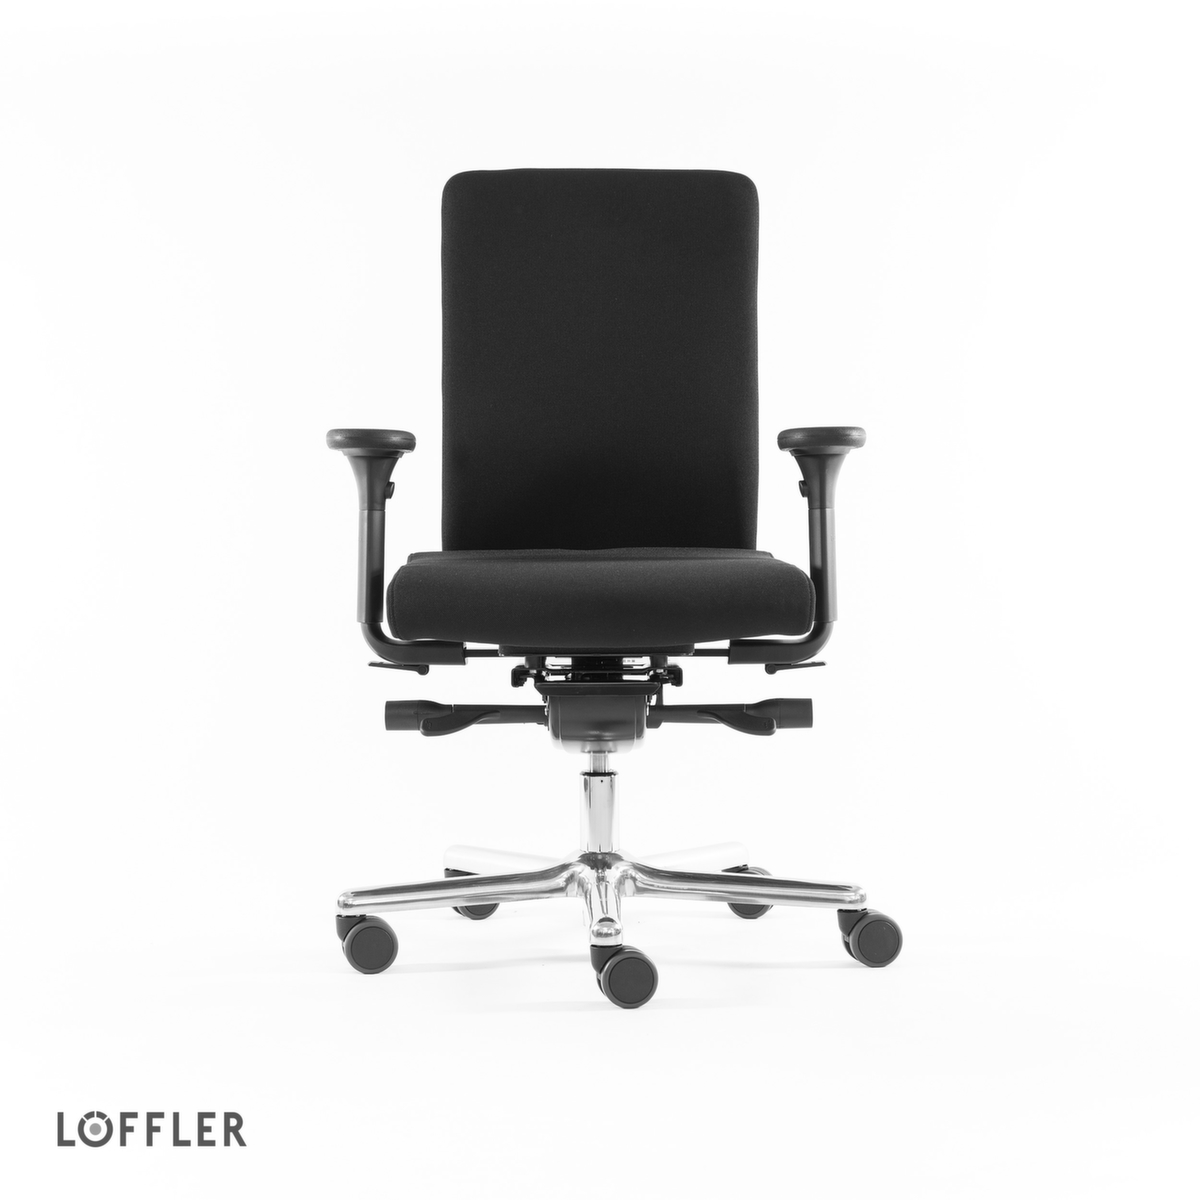 Löffler Bürodrehstuhl mit viskoelastischem Sitz, schwarz Standard 2 ZOOM